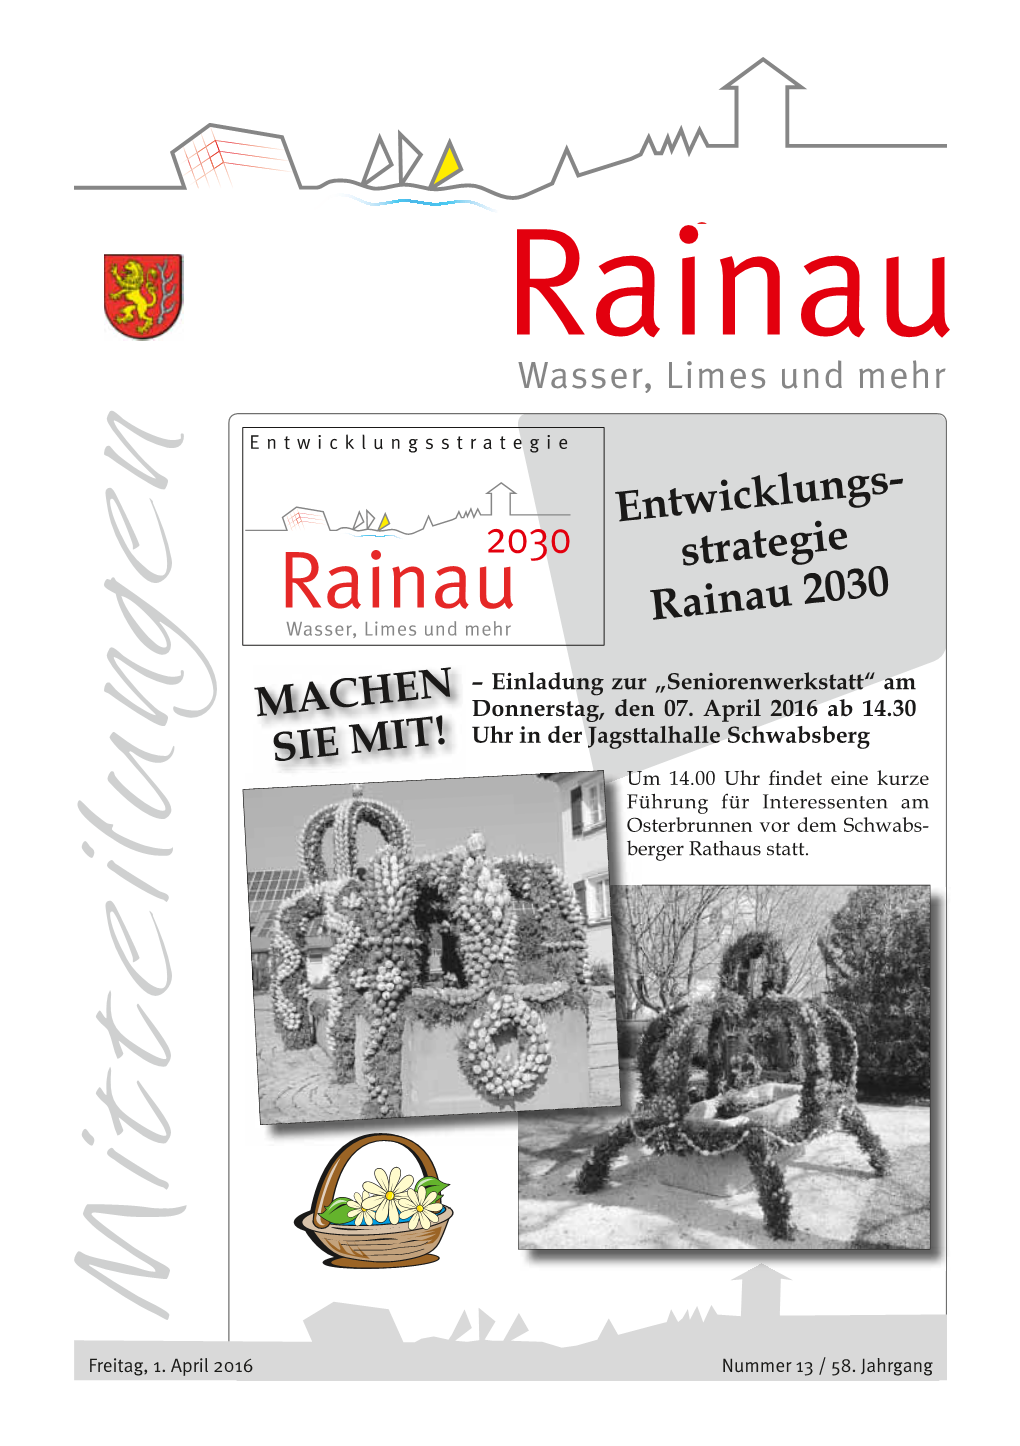 Strategie Rainau 2030